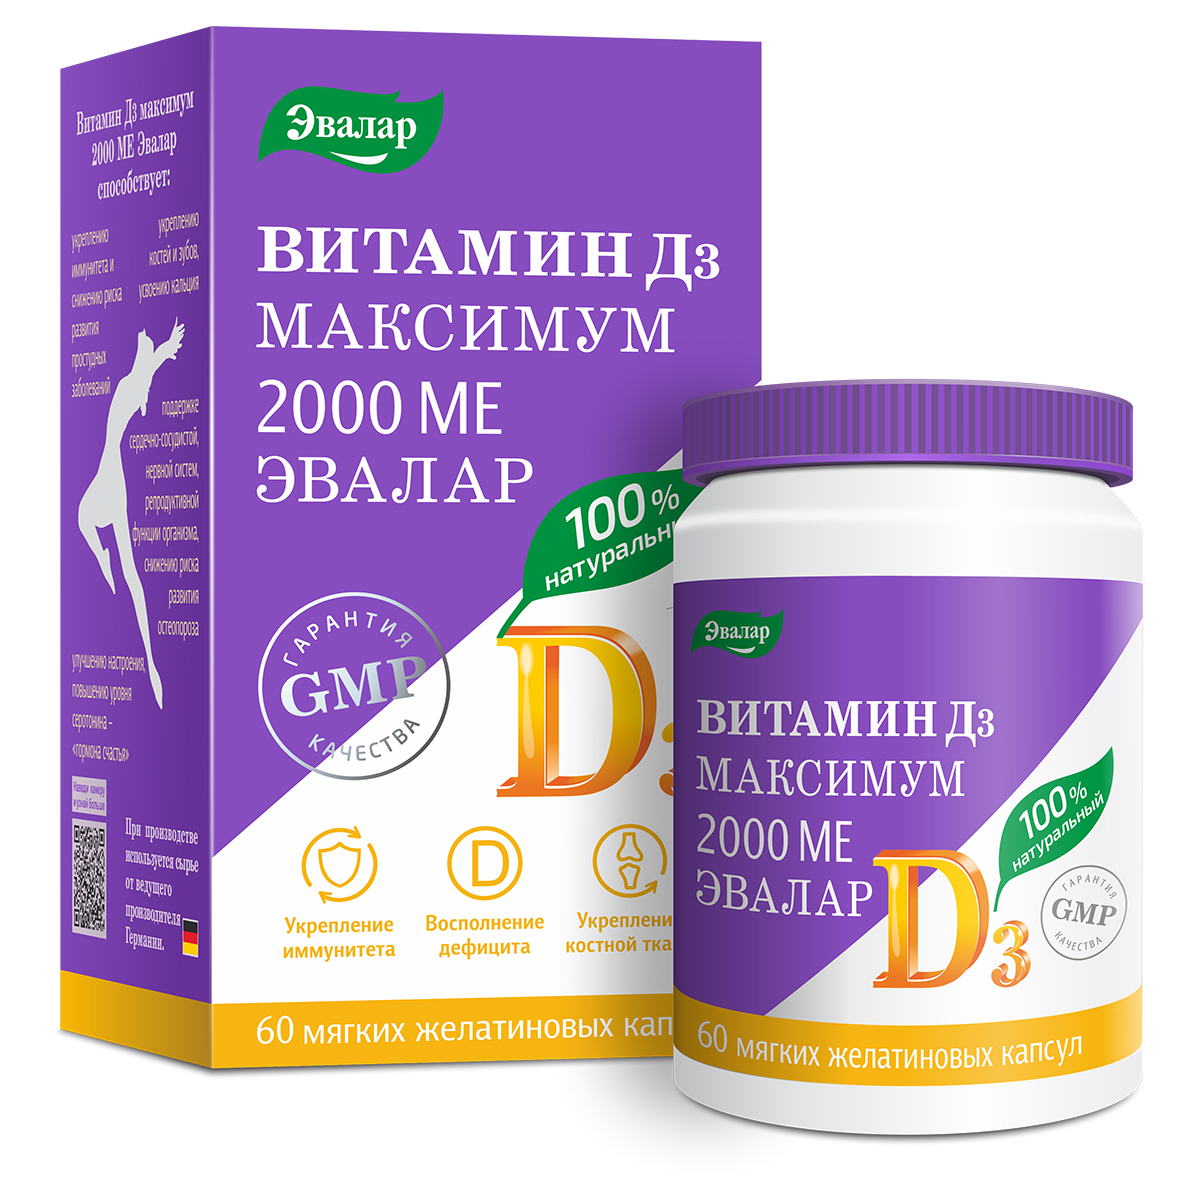 Витамин Д3 максимум 2000 МЕ Эвалар, мягкие желатиновые капсулы по 0,3 г .